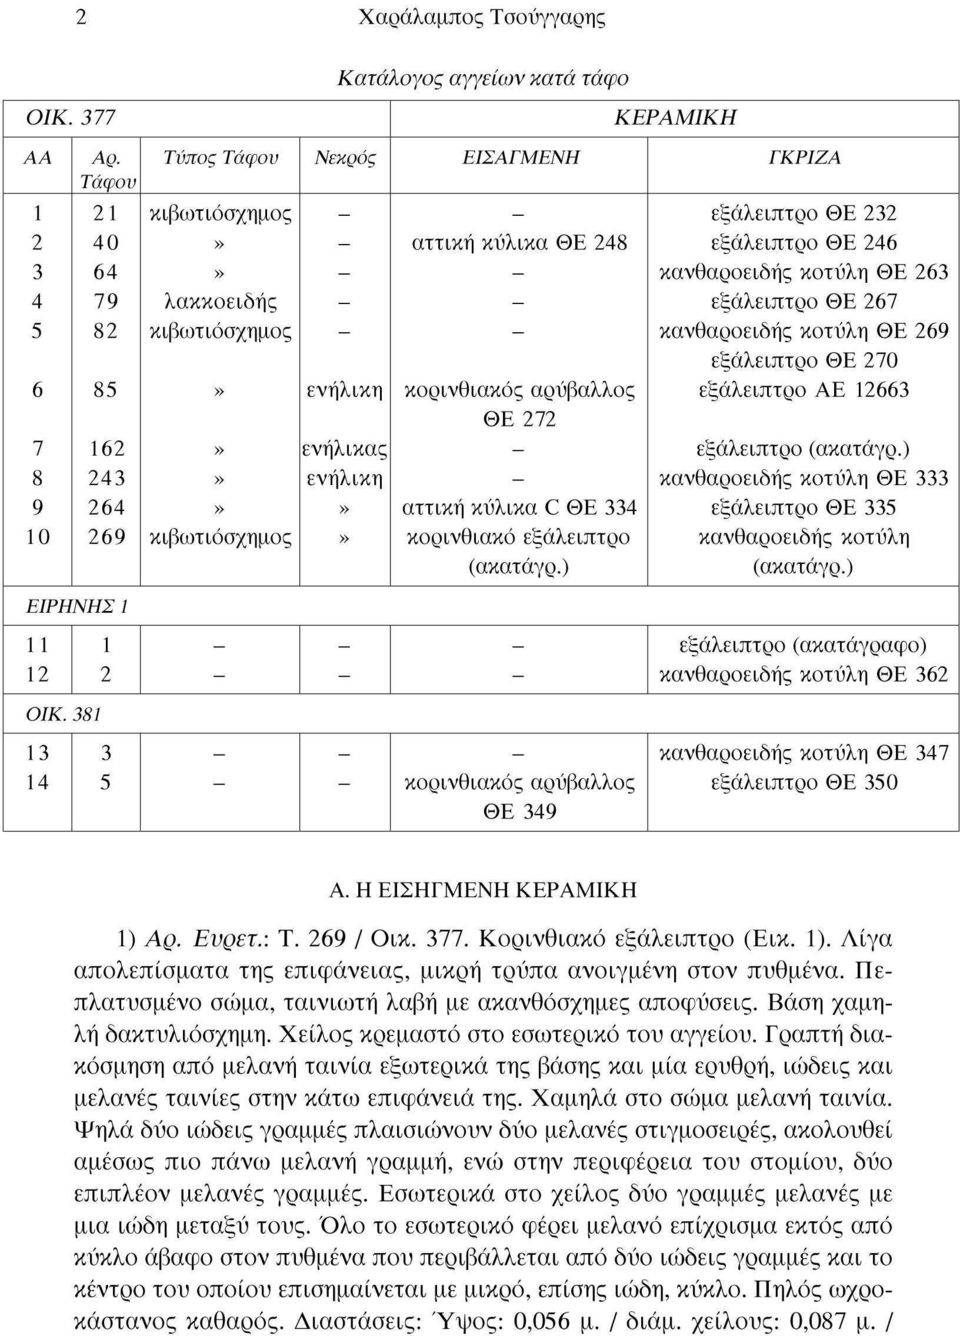 ΘΕ 272 αττική κύλικα С ΘΕ 334 κορινθιακό εξάλειπτρο (ακατάγρ.